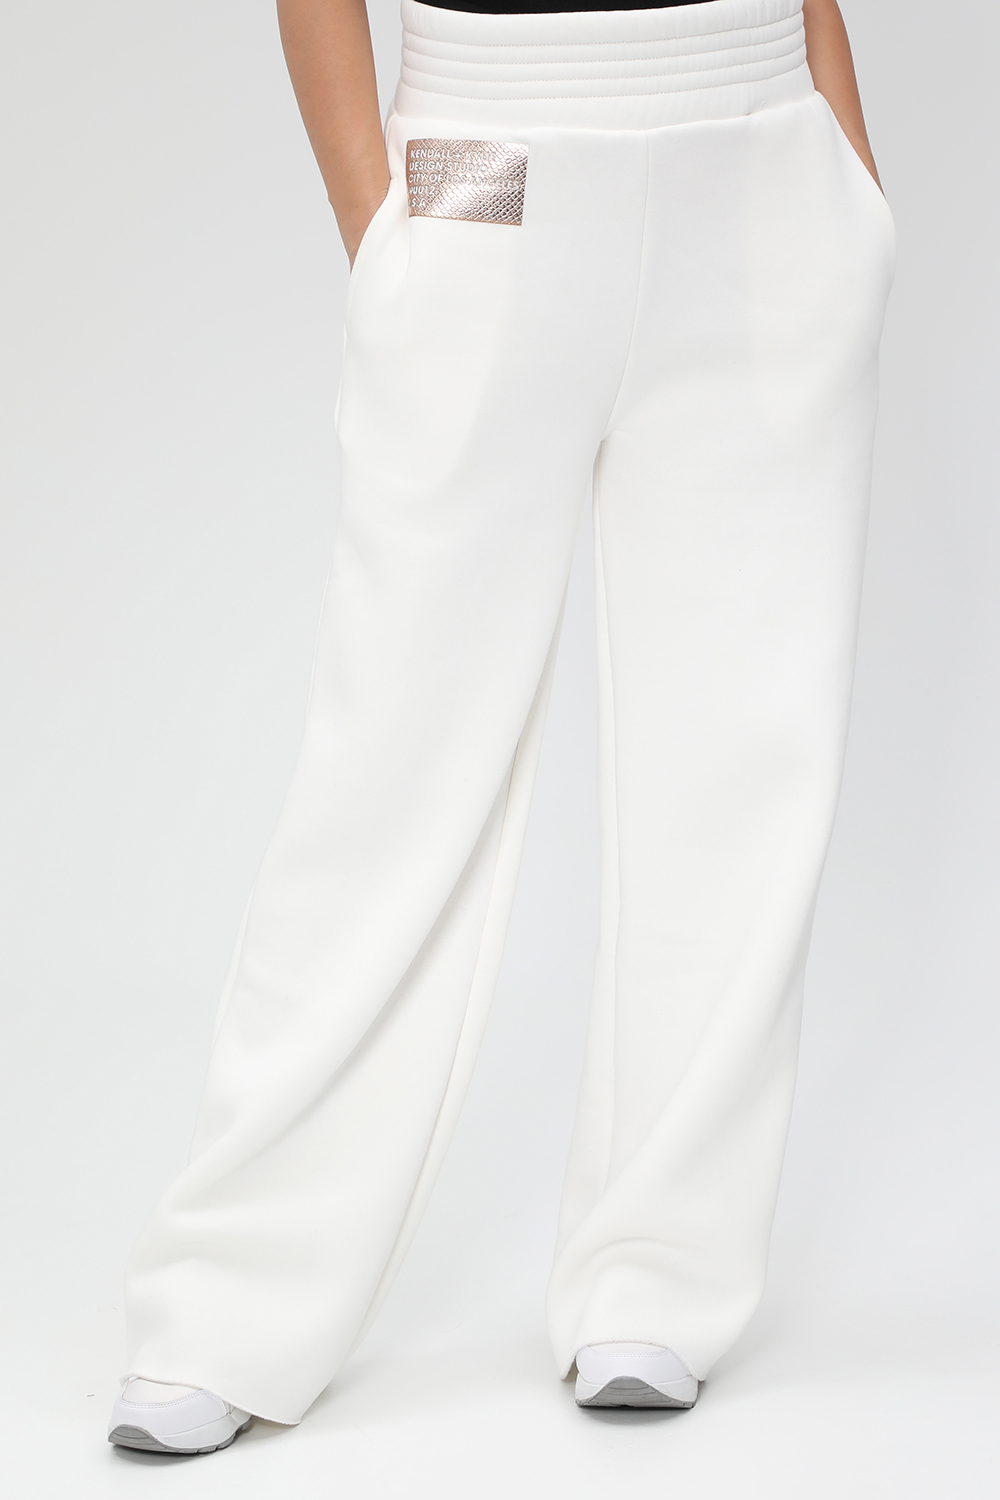 Γυναικεία/Ρούχα/Παντελόνια/Φόρμες KENDALL + KYLIE - Γυναικείο παντελόνι φόρμας KENDALL + KYLIE ACTIVE BOTTOM λευκό